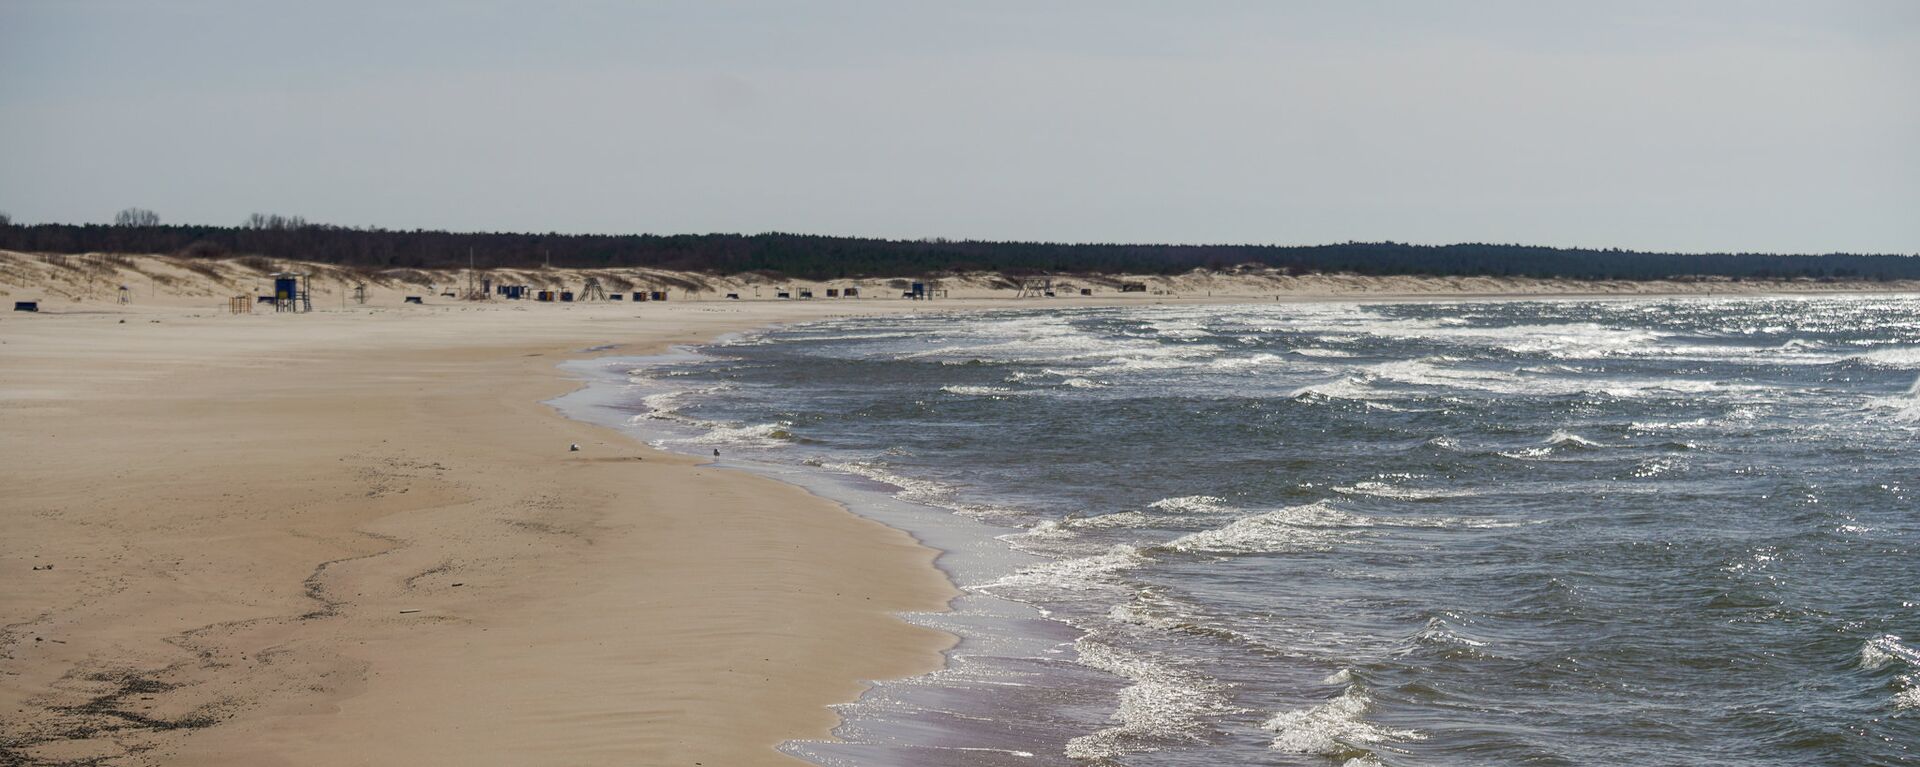 Пляж в Вентспилсе - Sputnik Латвия, 1920, 06.07.2018